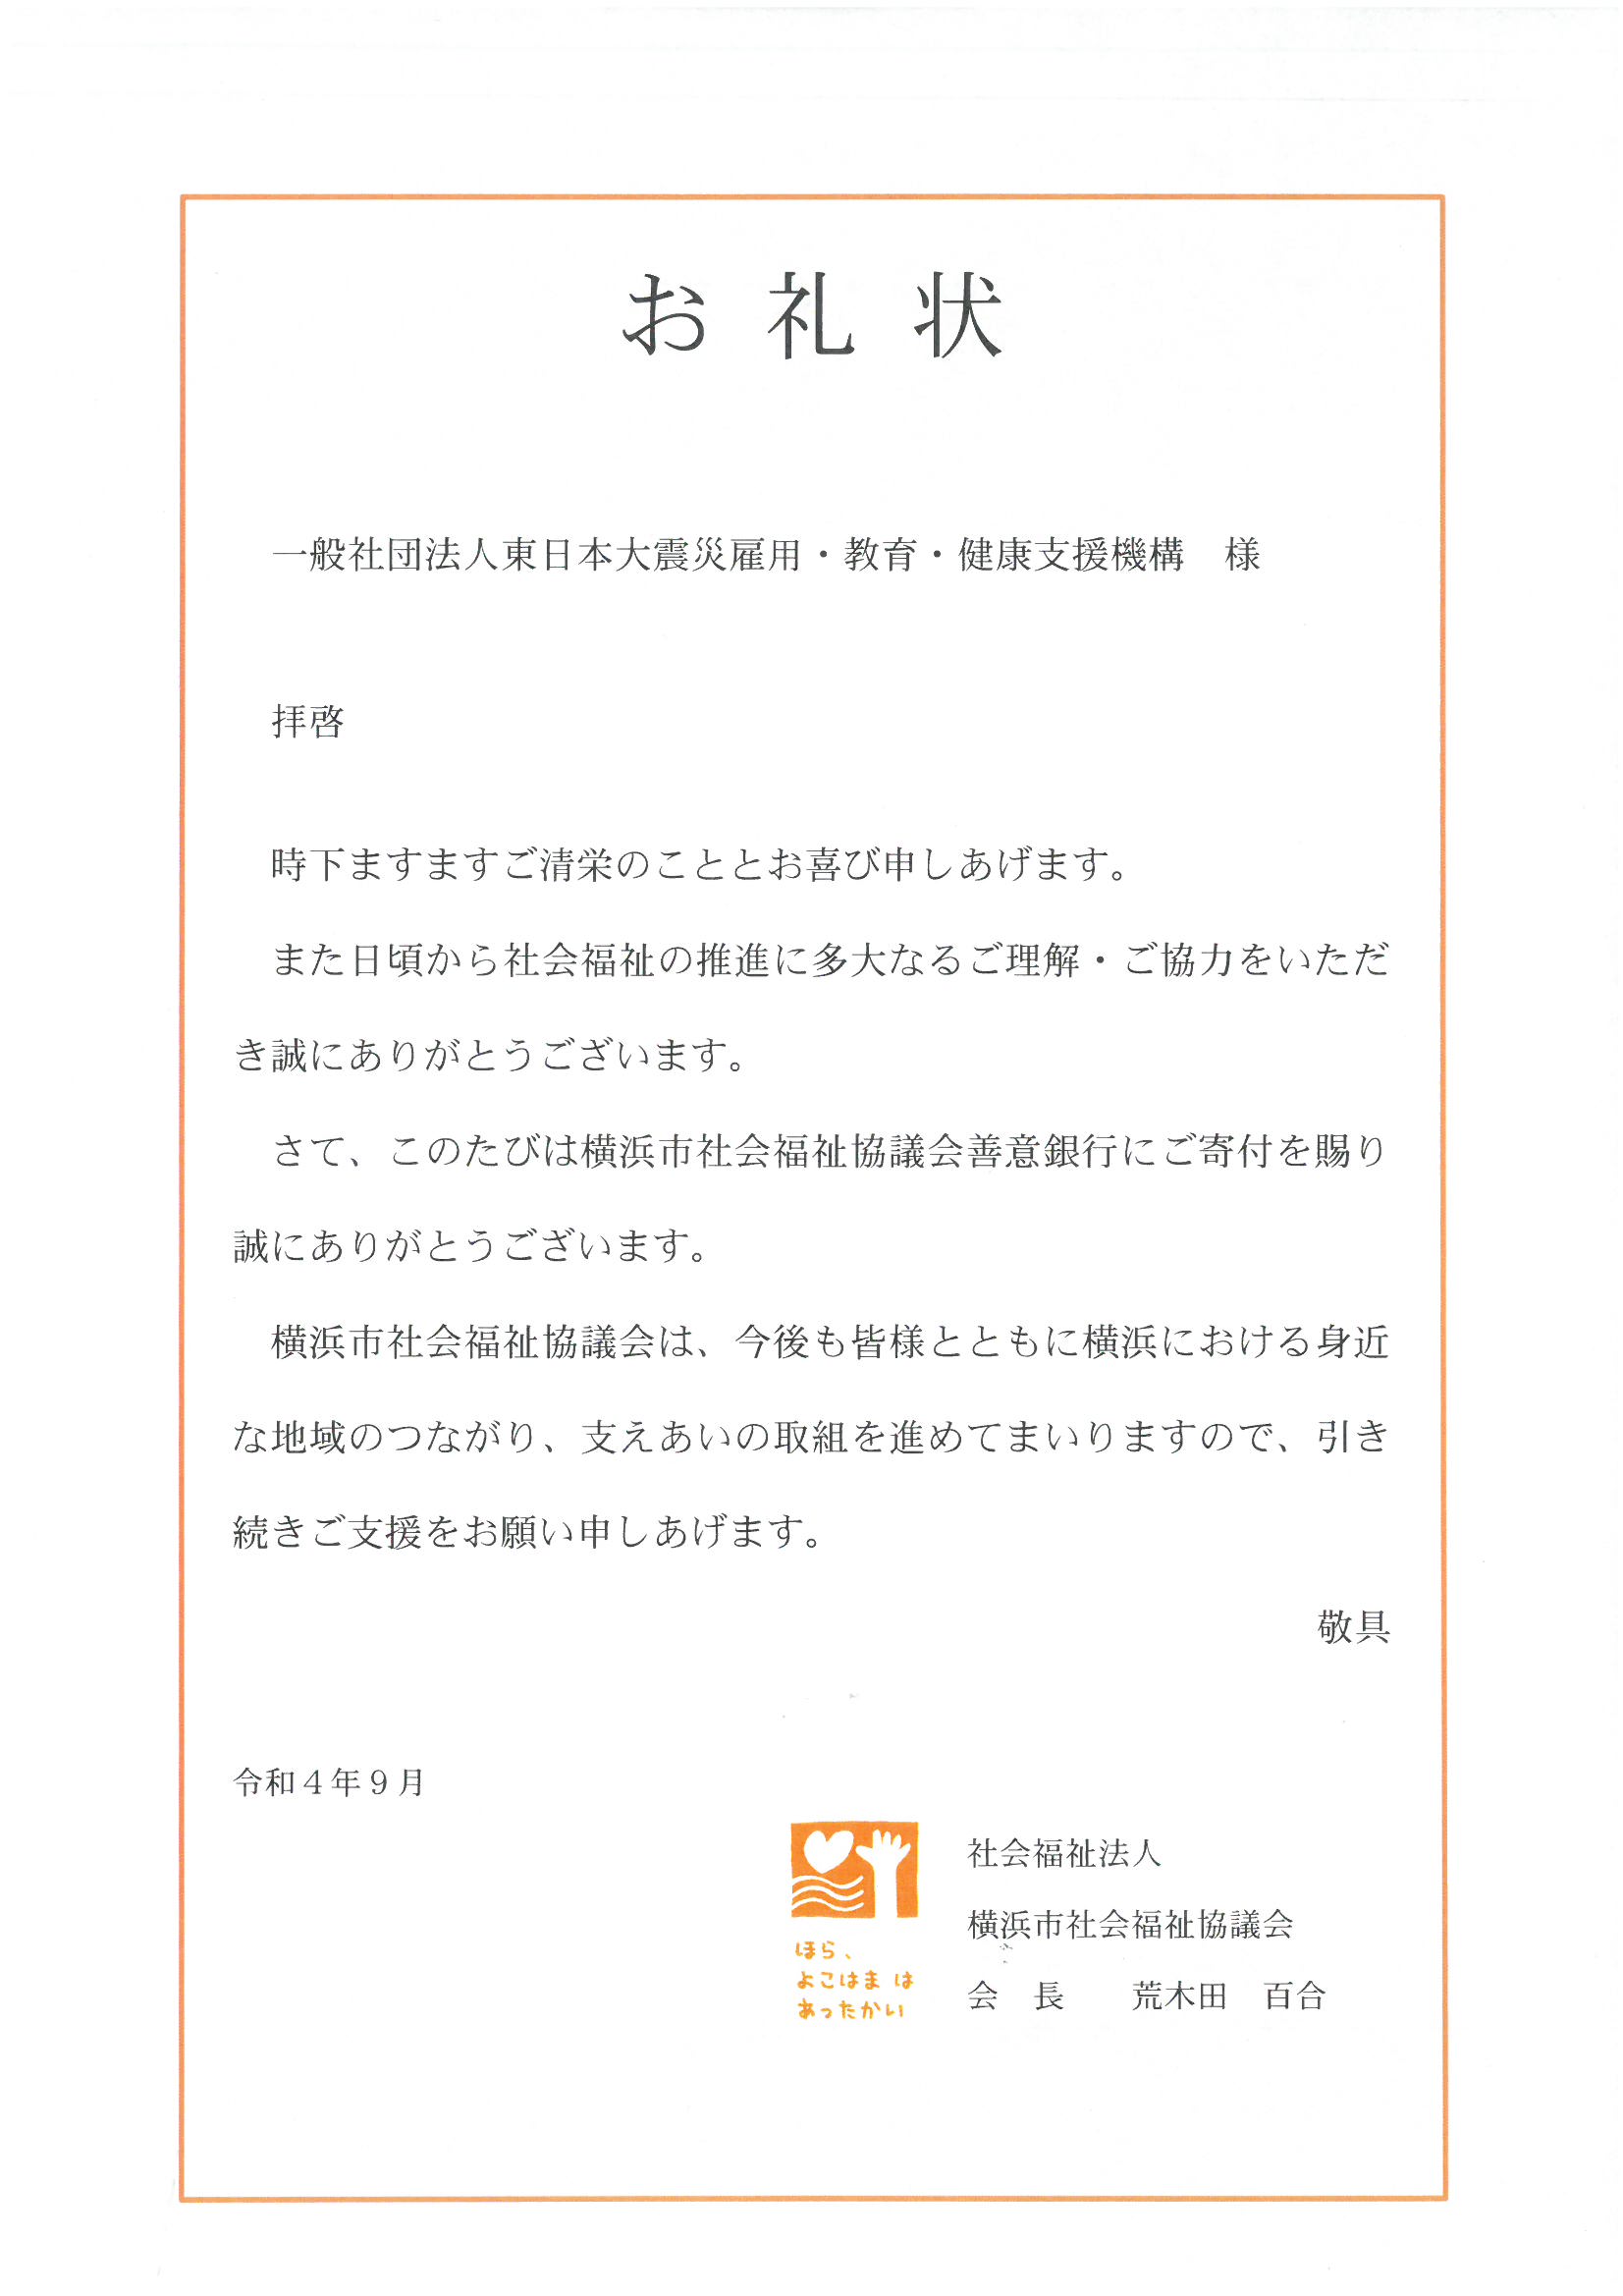 震災機構　横浜市社会福祉協議会様からお礼状が届く